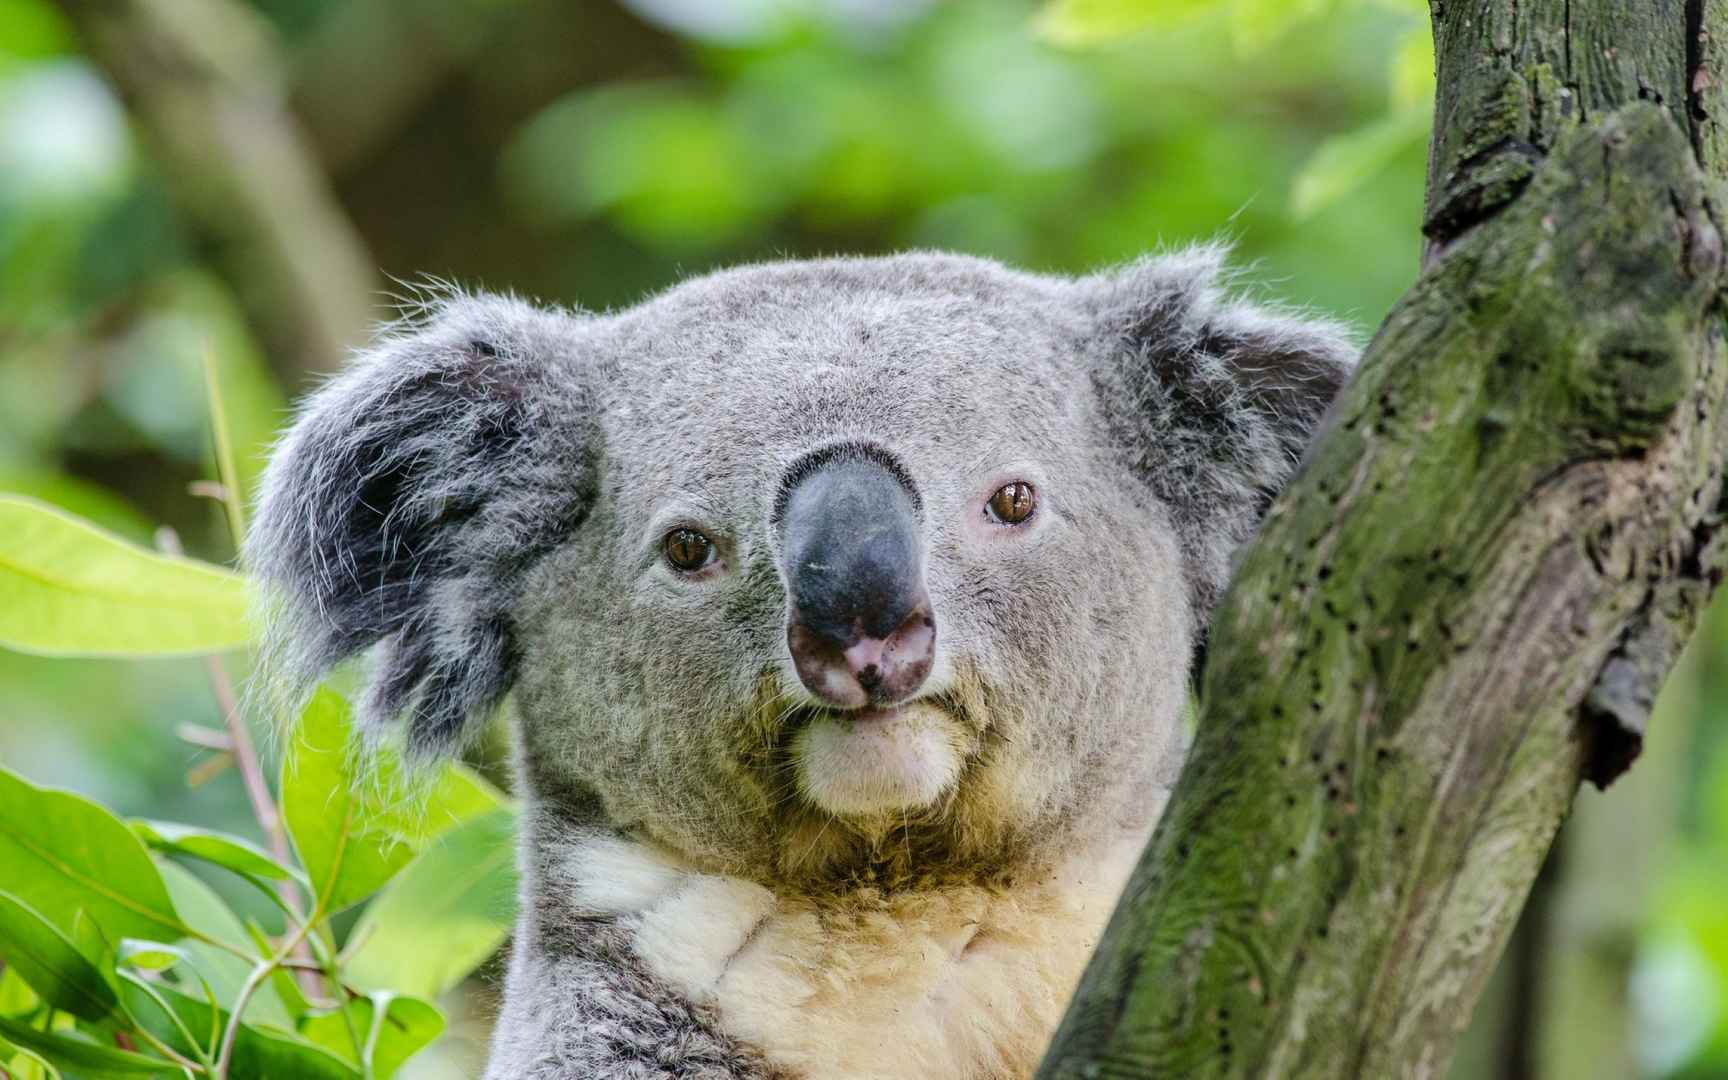 澳大利亚树袋熊(考拉)图片 - 25H.NET壁纸库